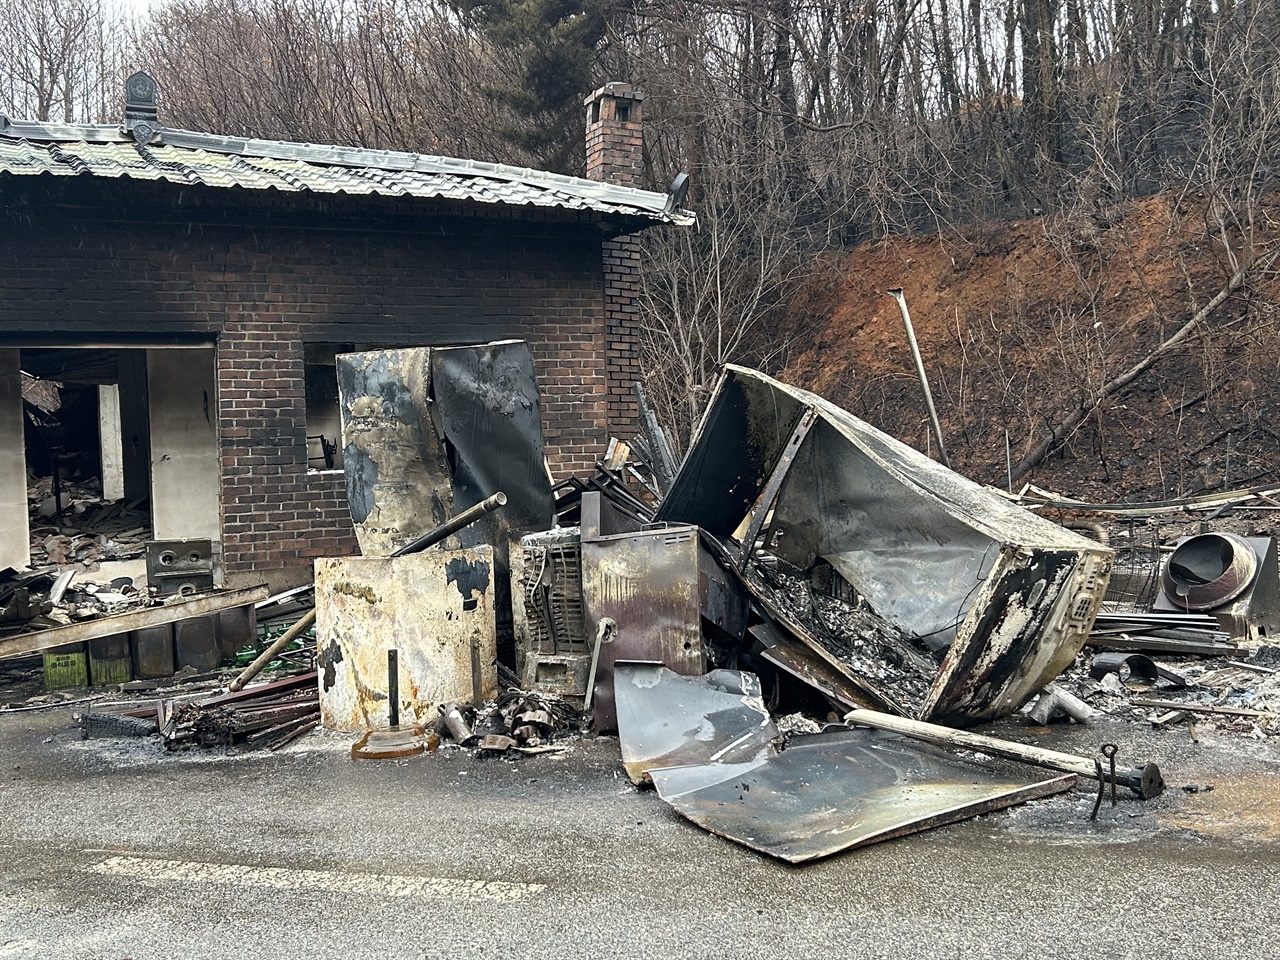 이번 산불로 피해를 본 주택과 컨테이너 등에는 아직 철거되지 못하고 불에 탄 흔적이 그대로 남아있었다.